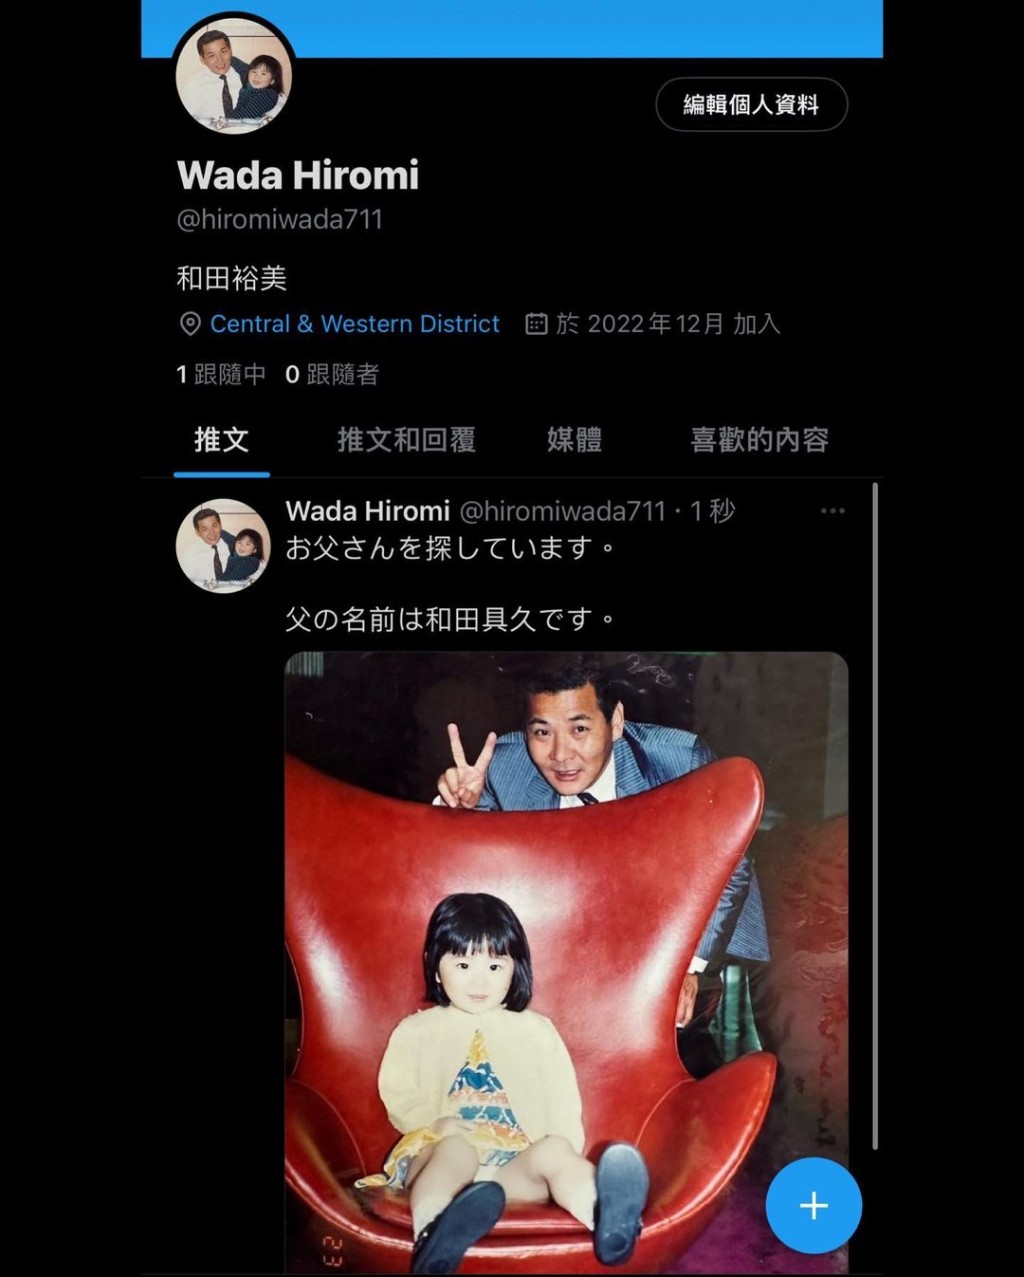 裕美立刻開twitter賬號聯絡，同時以日文貼出與父親的童年合照。